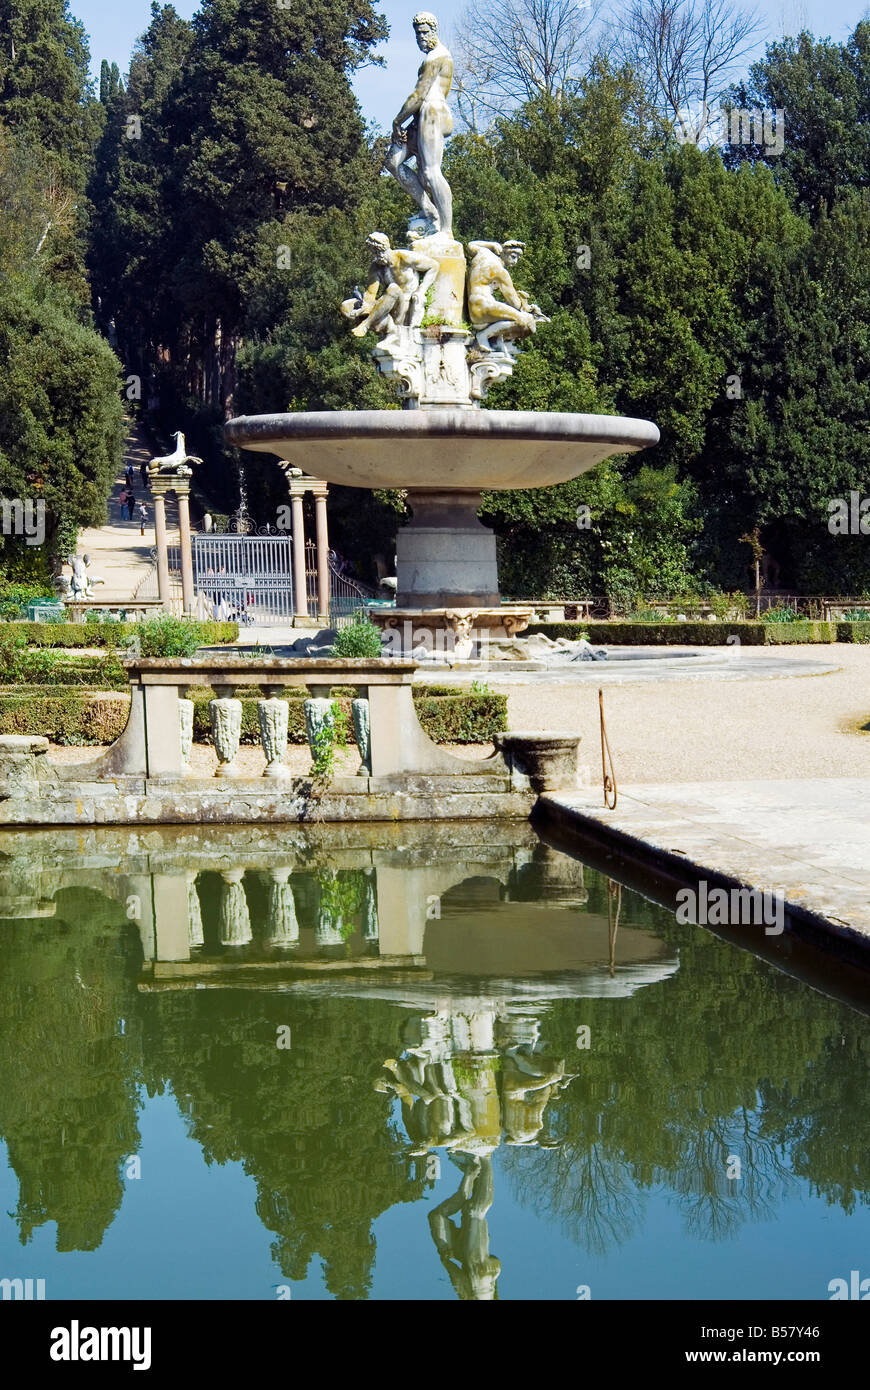 Vasca dell'Isola (Island's Pond), Ocean's Fountain, Boboli Gardens, Florence, Tuscany, Italy, Europe Stock Photo